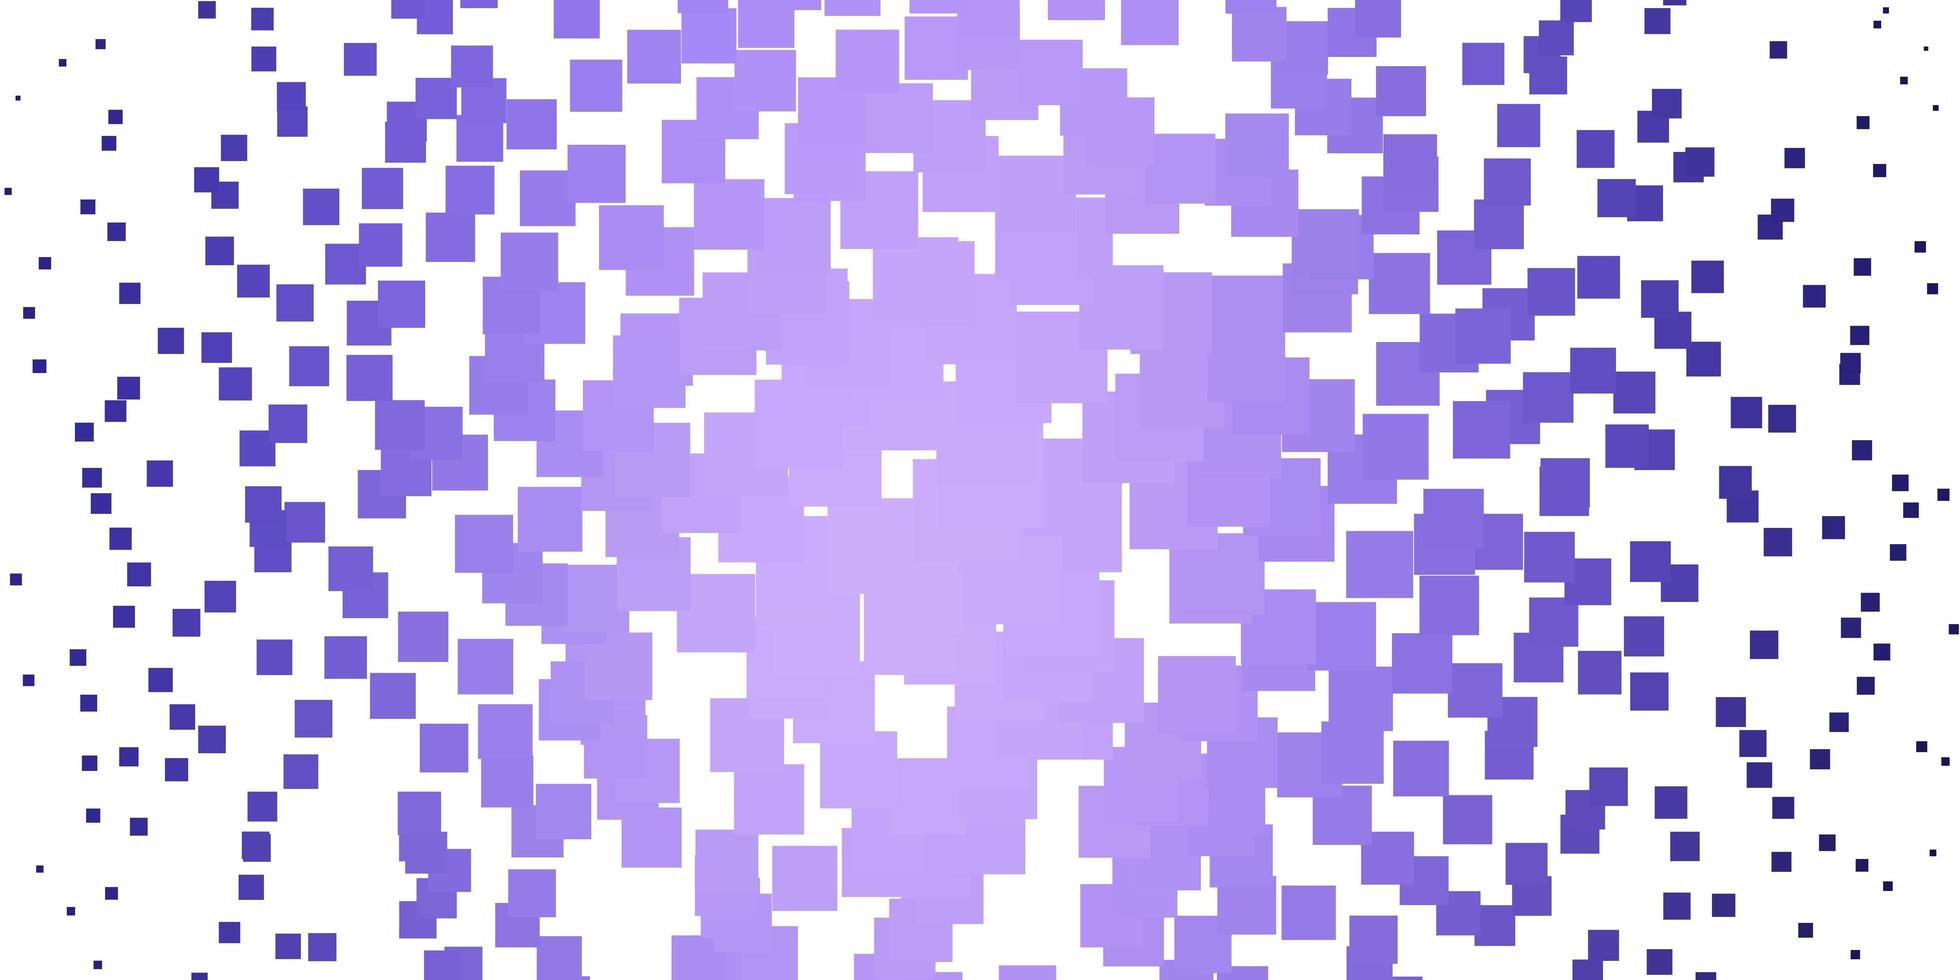 patrón de vector púrpura claro en estilo cuadrado.